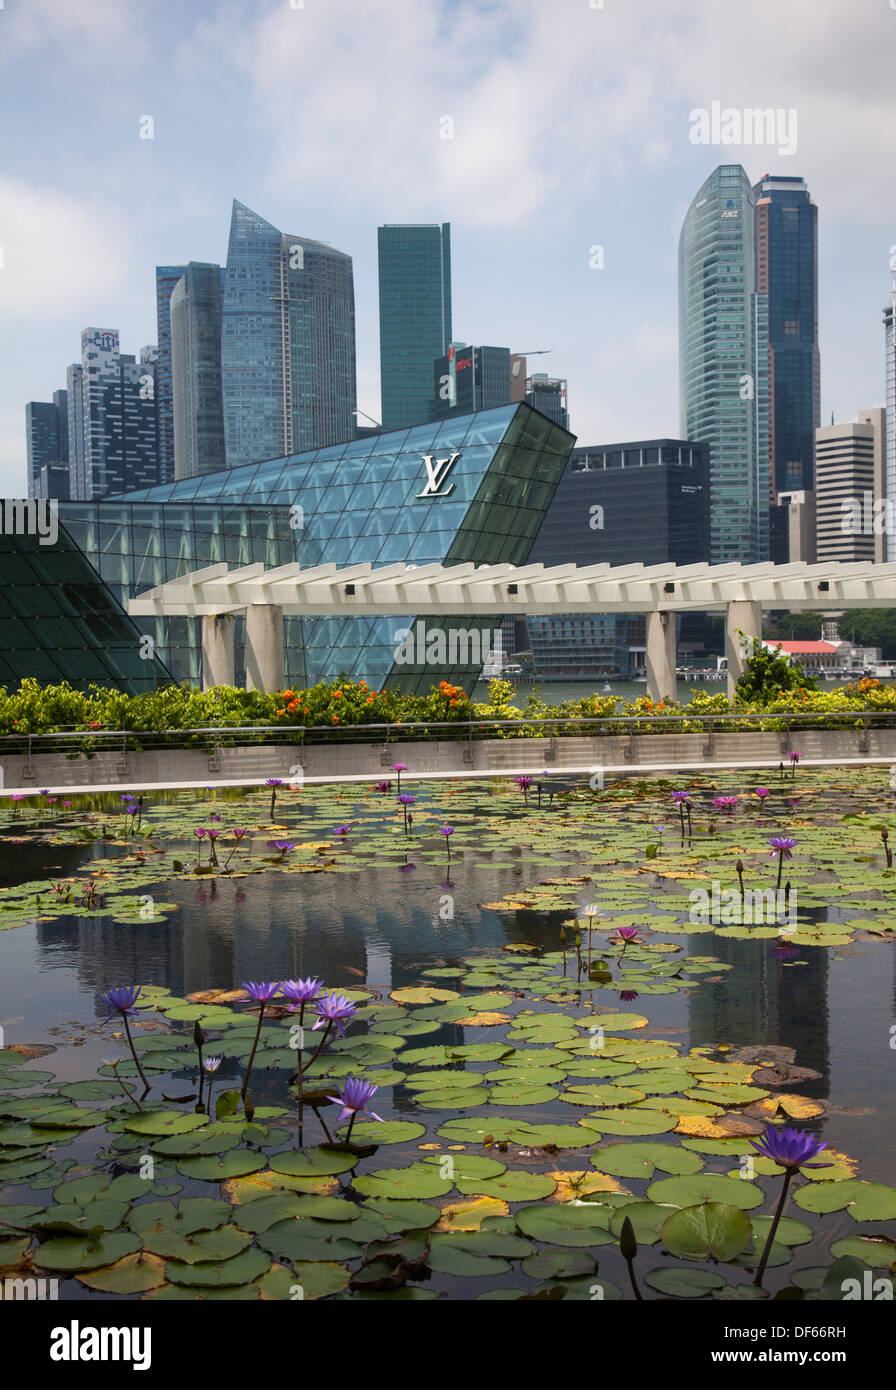 Wolkenkratzer Marina Bay Hotel Area Singapur Asien Blick finanziellen Zentren Geld macht Markt Handel Austausch internationaler build Stockfoto